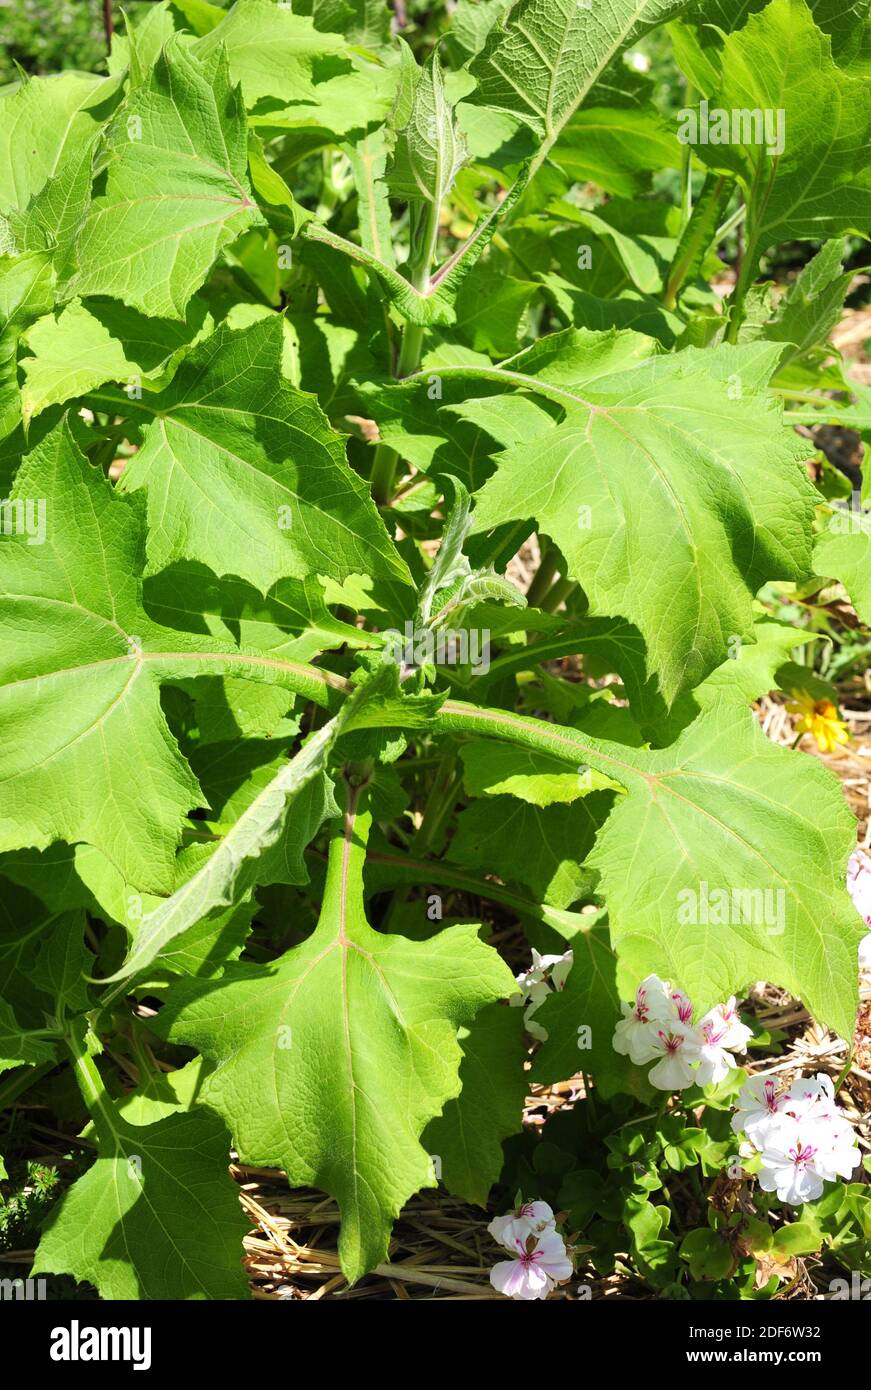 Yacon oder peruanischer gemahlener Apfel (Smallanthus sonchifolius) ist eine mehrjährige Pflanze, die in den Anden beheimatet ist. Seine tuberösen Wurzeln sind essbar. Stockfoto